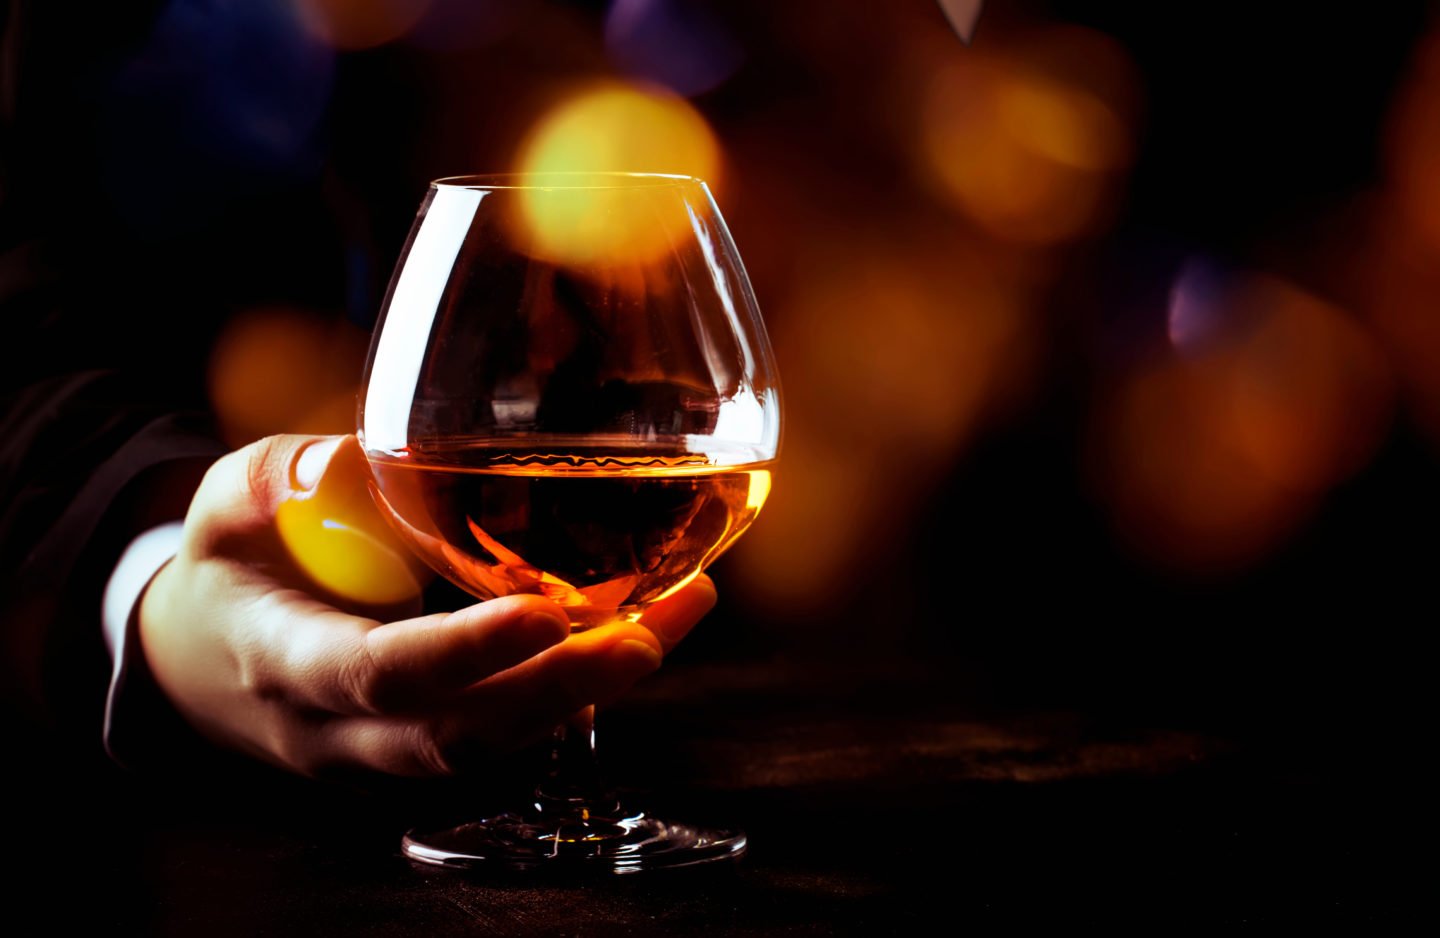 handheld glass of cognac